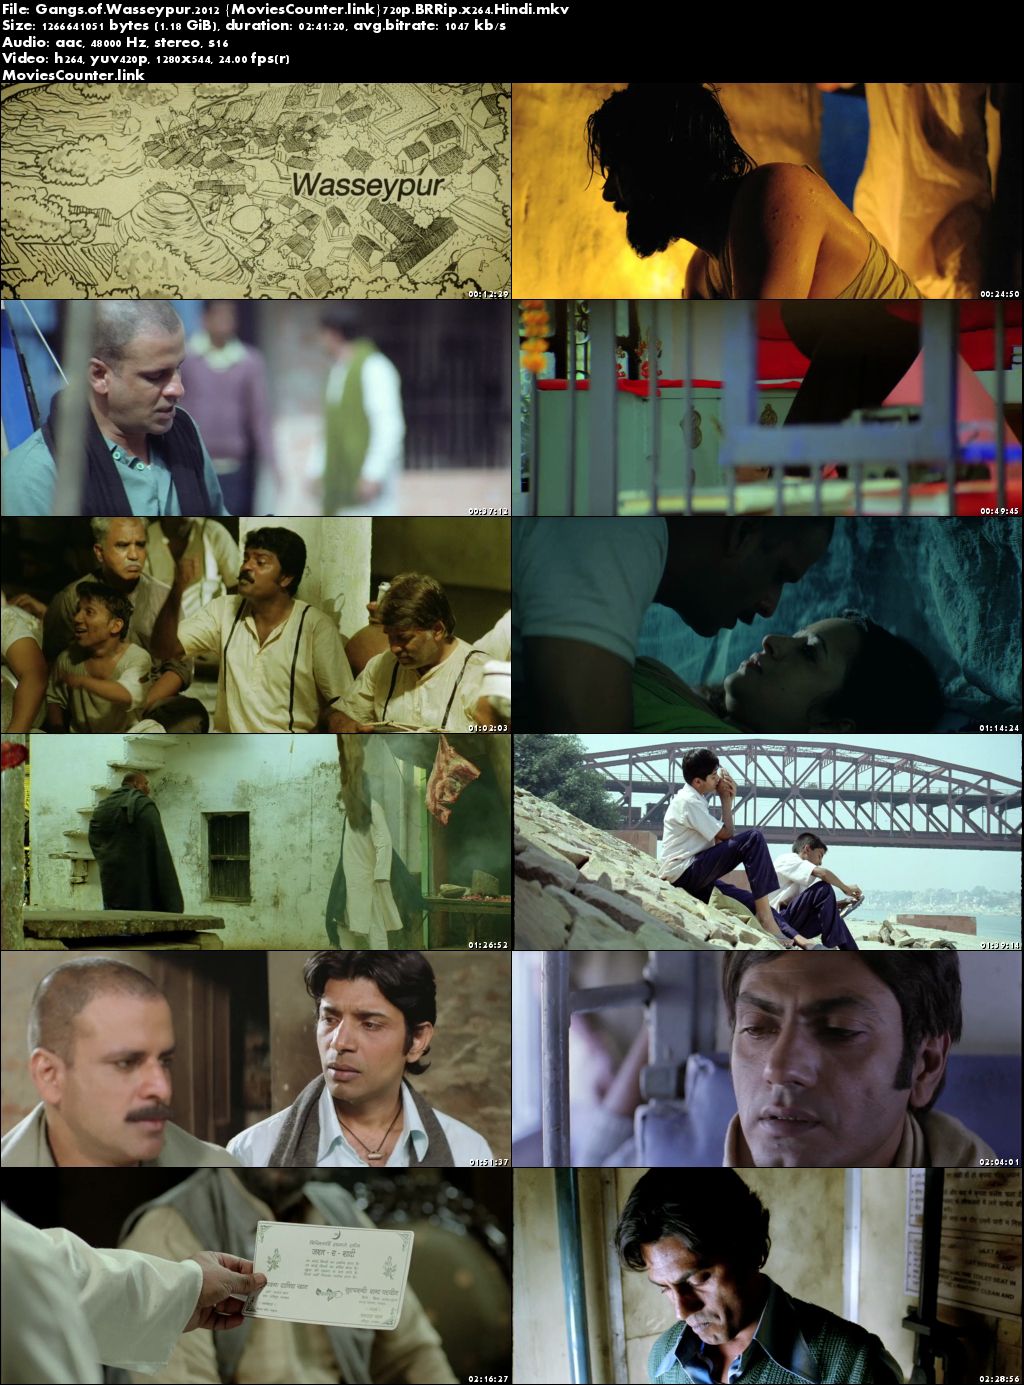 gangs of wasseypur 2 full movie hindi hd